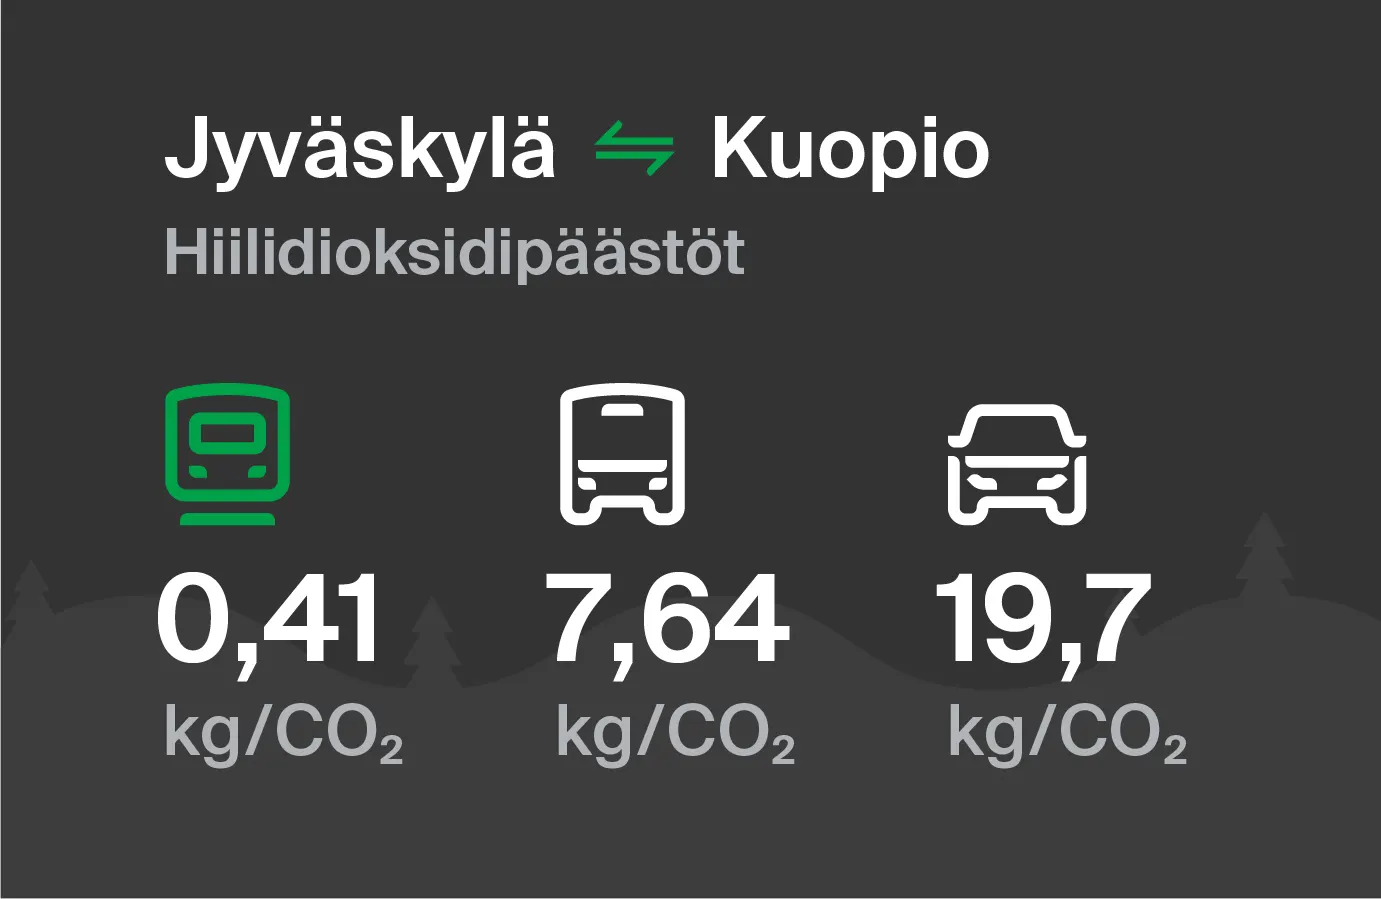 Koldioxidutsläpp från Jyväskylä till Kuopio genom olika transportsätt: med tåg 0,41 kg/CO2, med buss 7,64 kg/CO2 och med bil 19,7 kg/CO2.